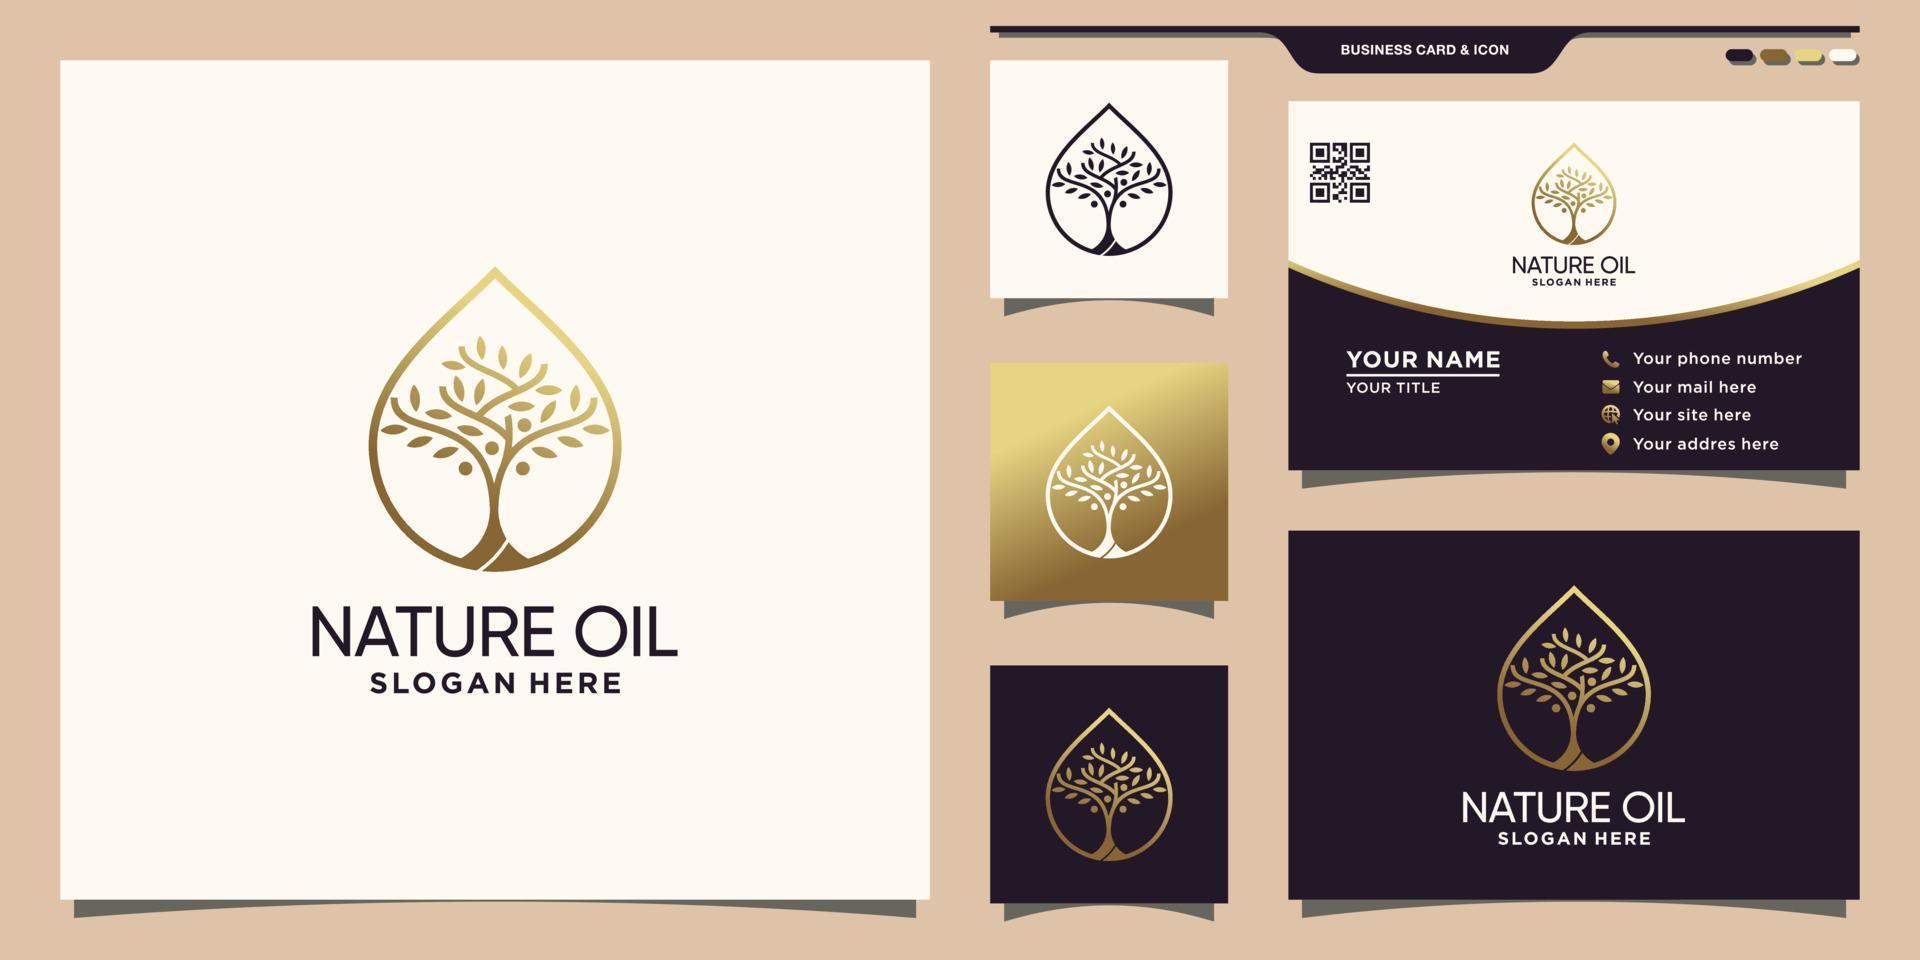 logo d'huile de nature avec concept unique de goutte d'eau et conception de carte de visite vecteur premium